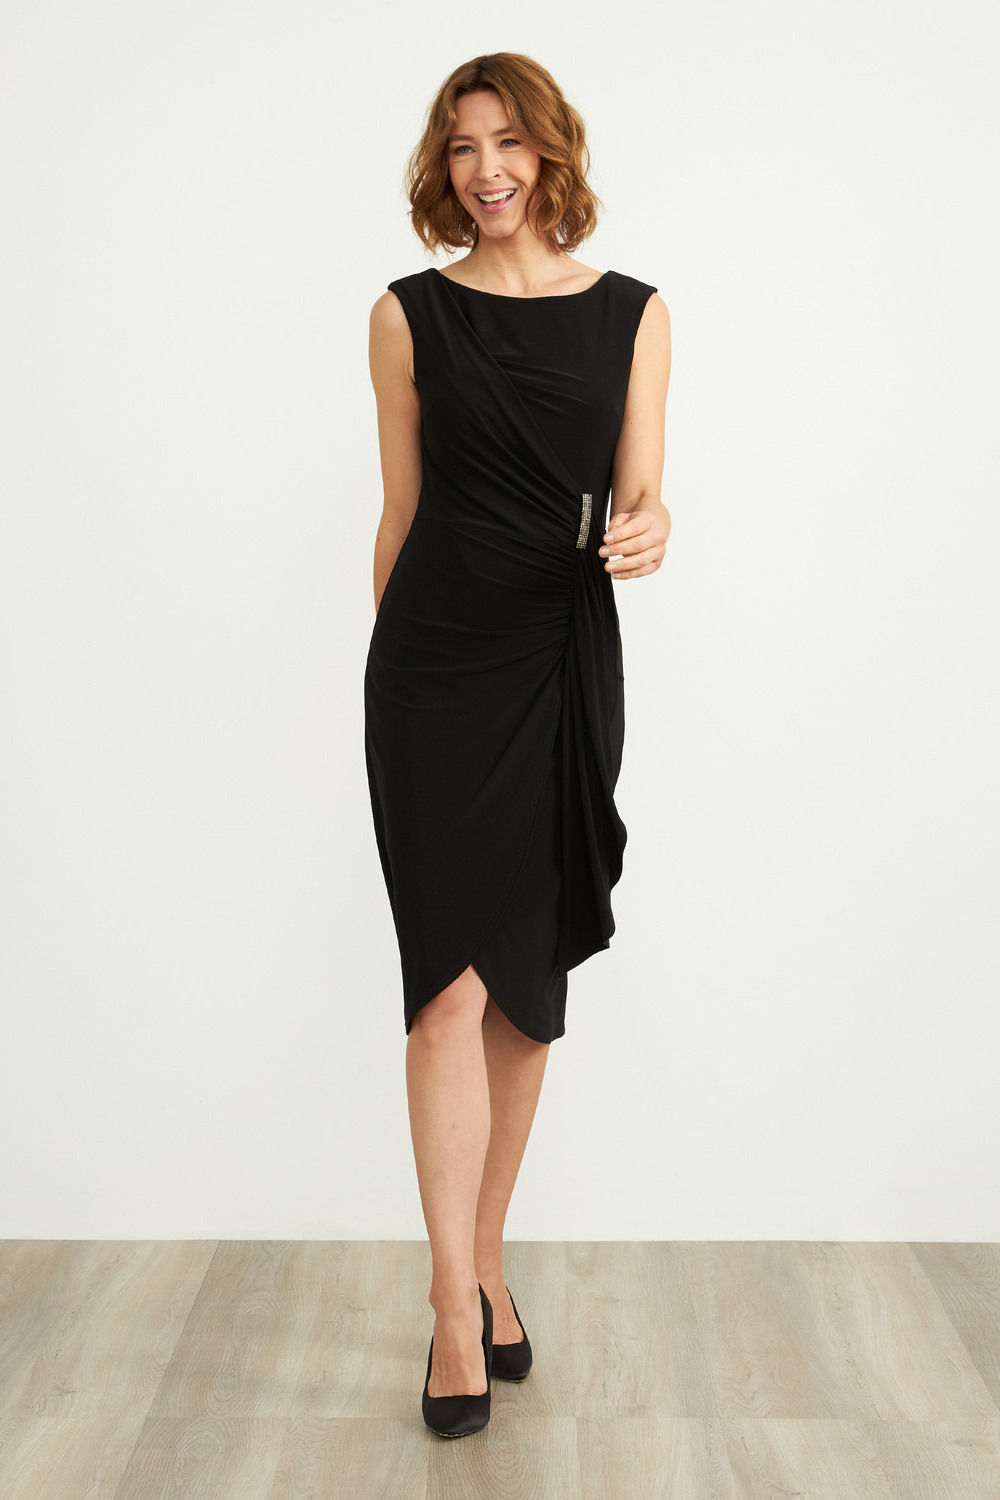 Joseph Ribkoff Jewel Detail Dress Style 204231. Black